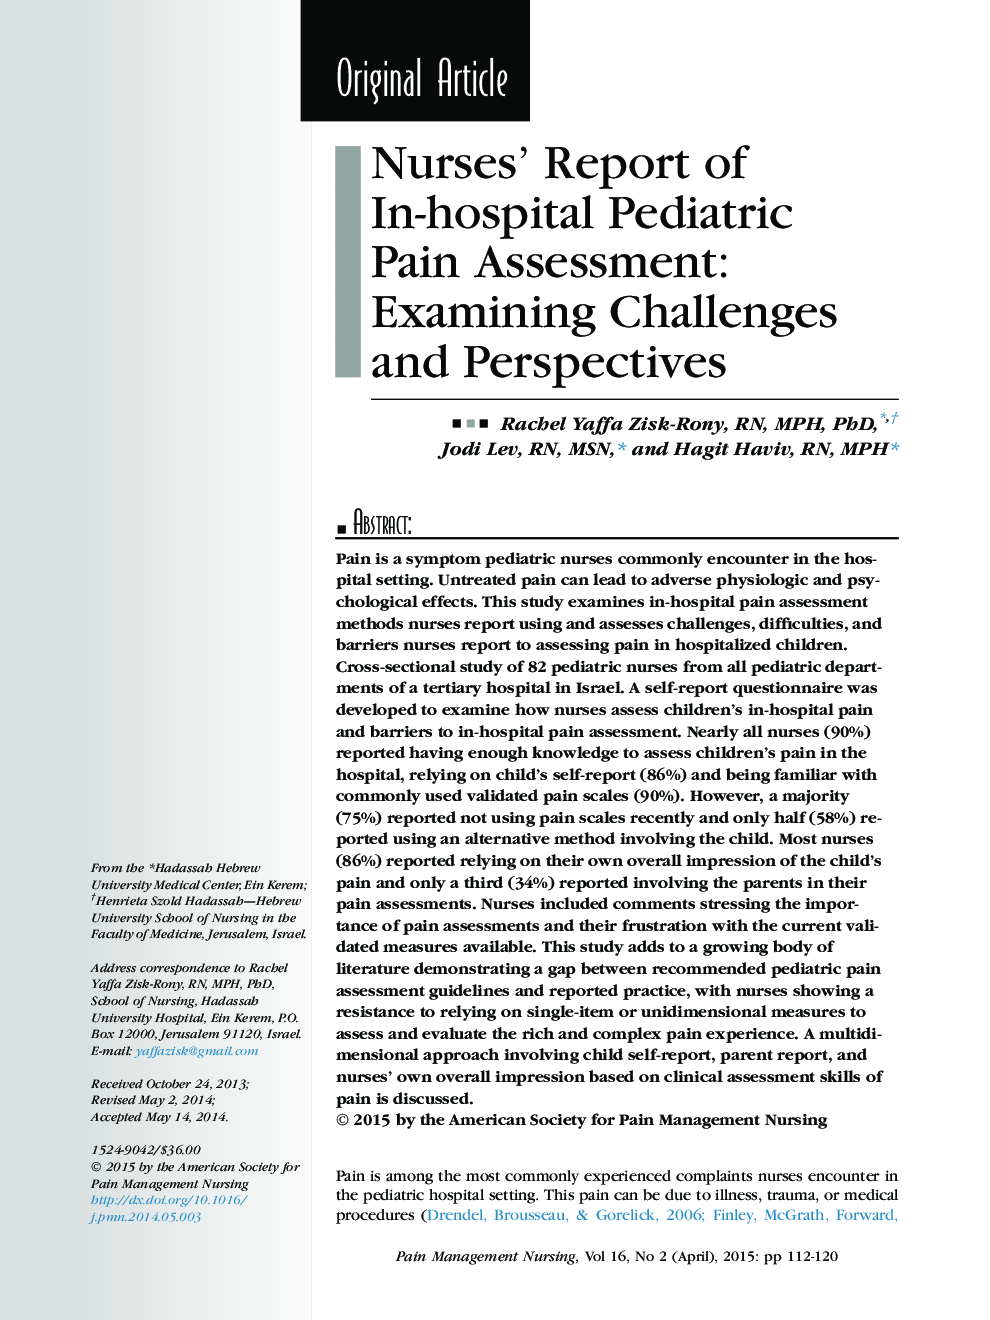 گزارش پرستاران از ارزیابی درد در بیمارستان کودکان: بررسی چالش ها و چشم انداز